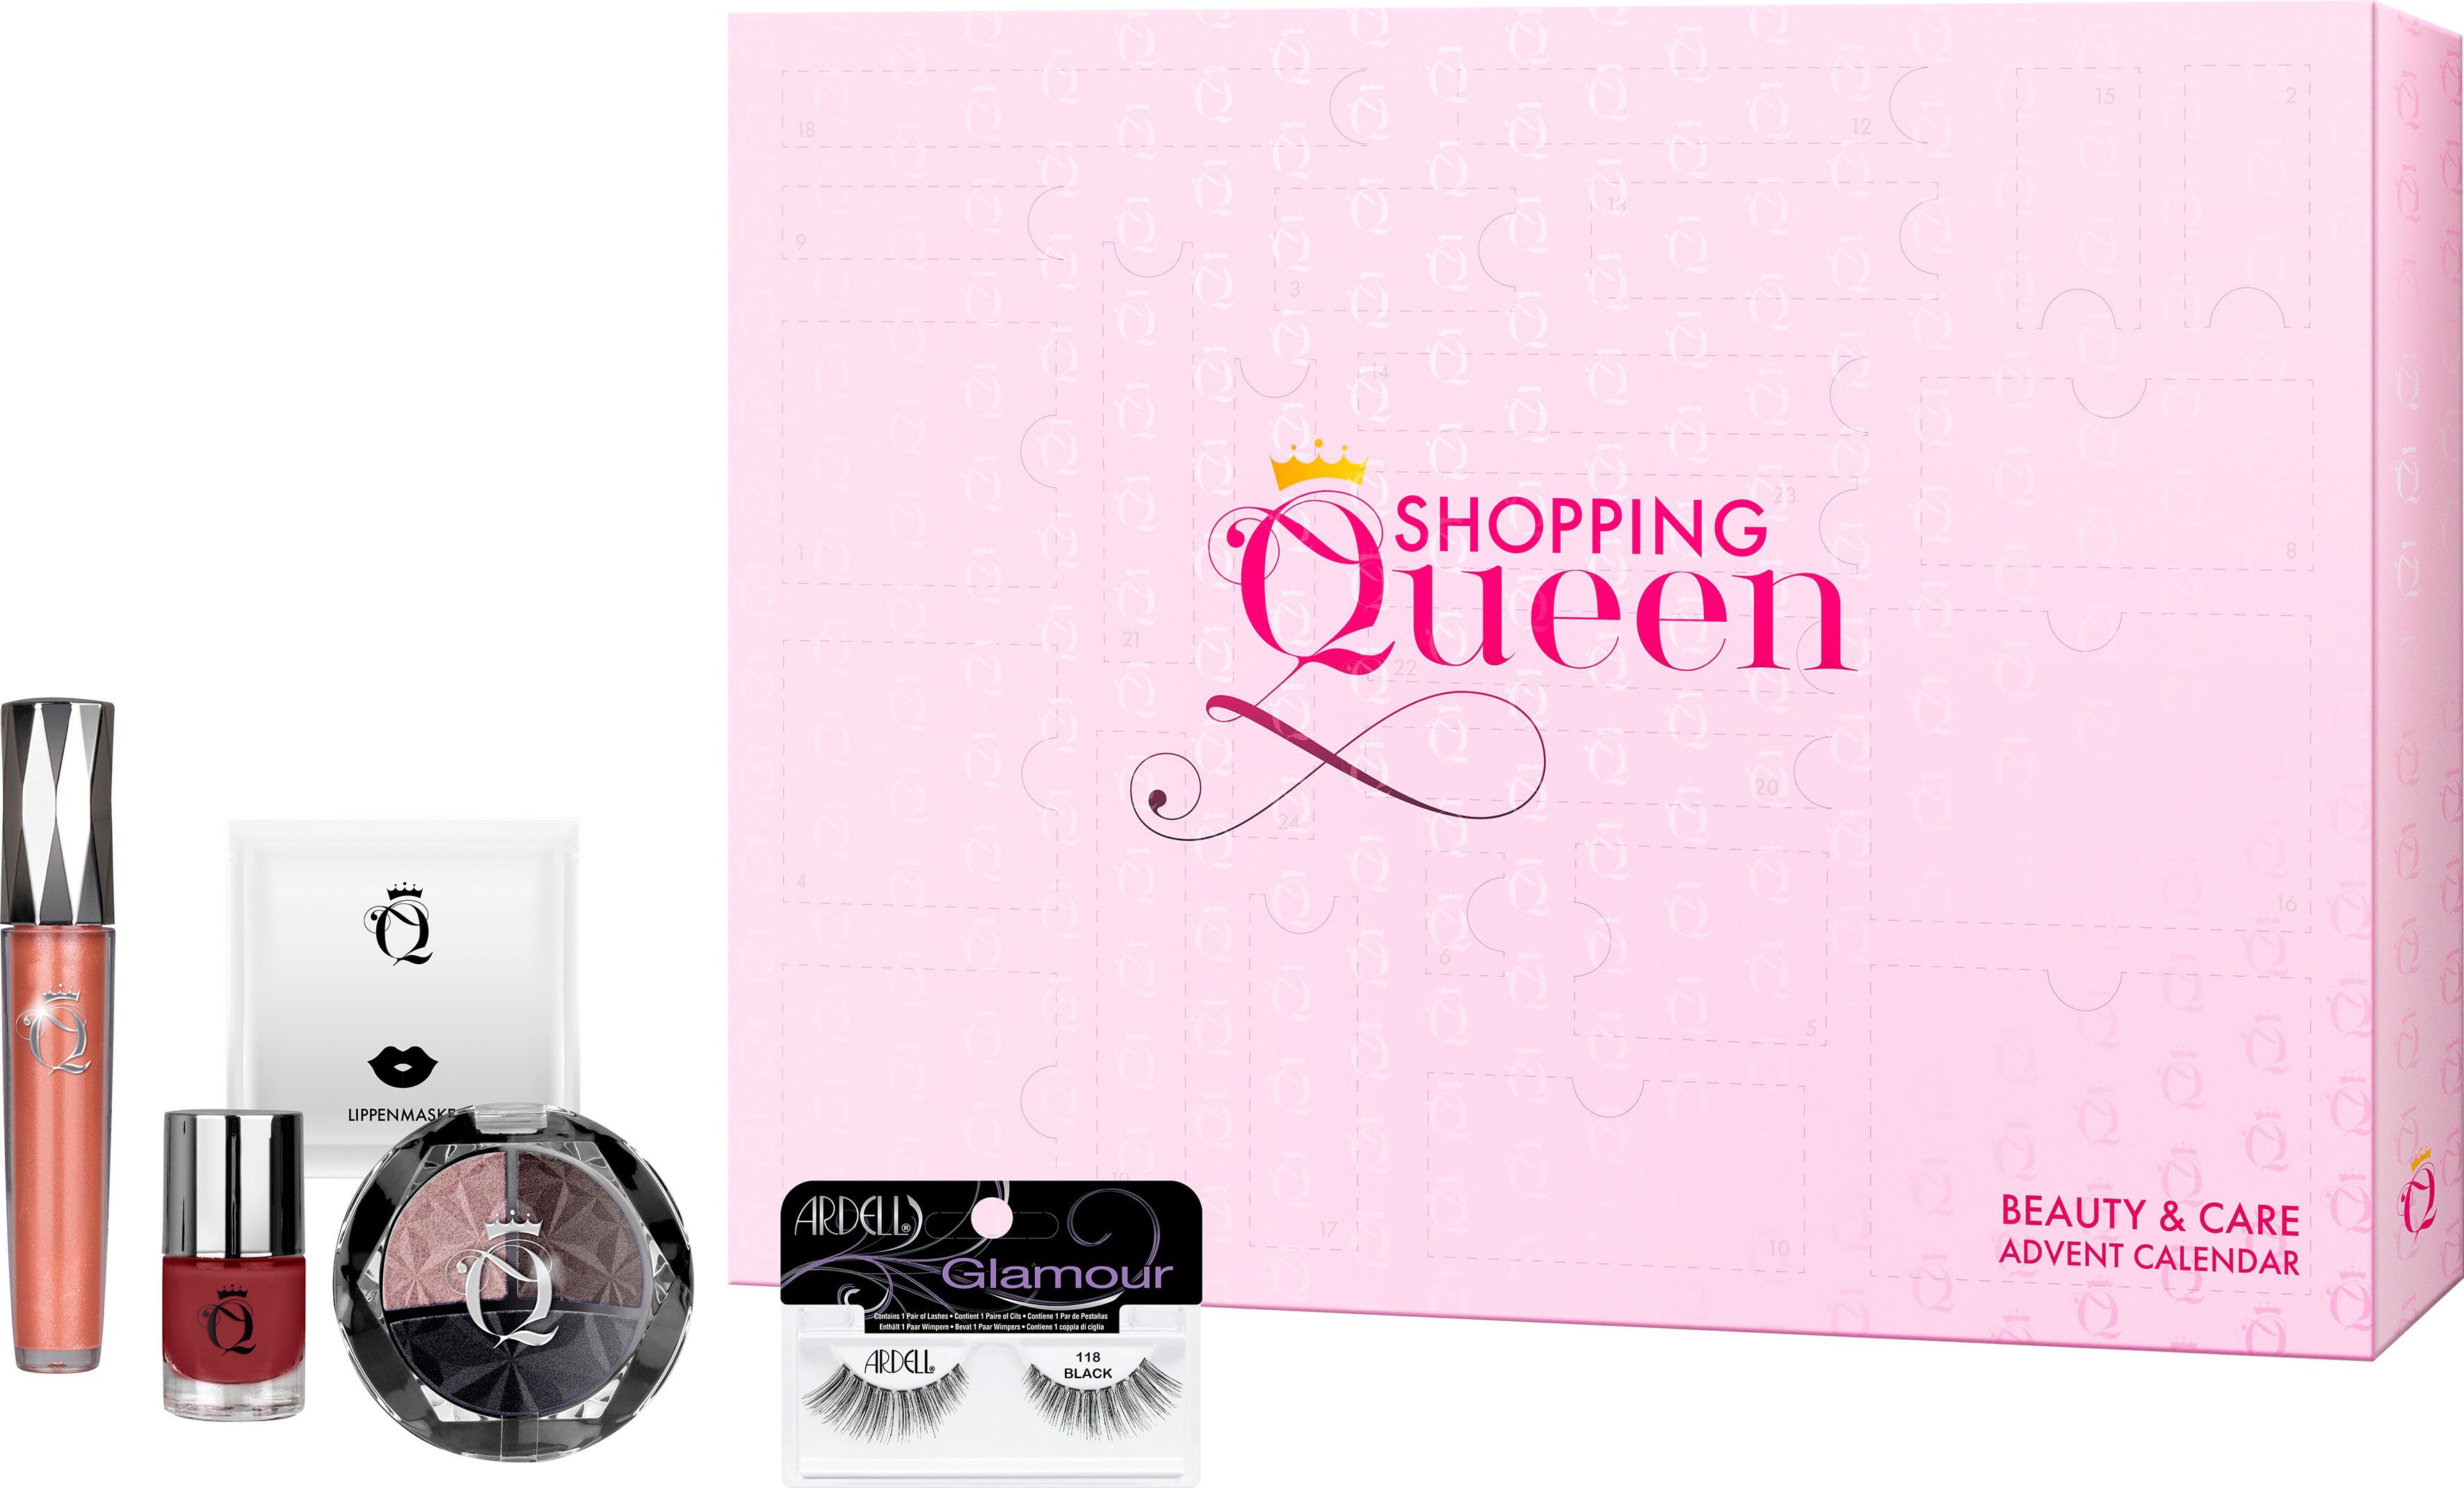 Shopping Queen Adventskalender Queen meets ARDELL Shopping